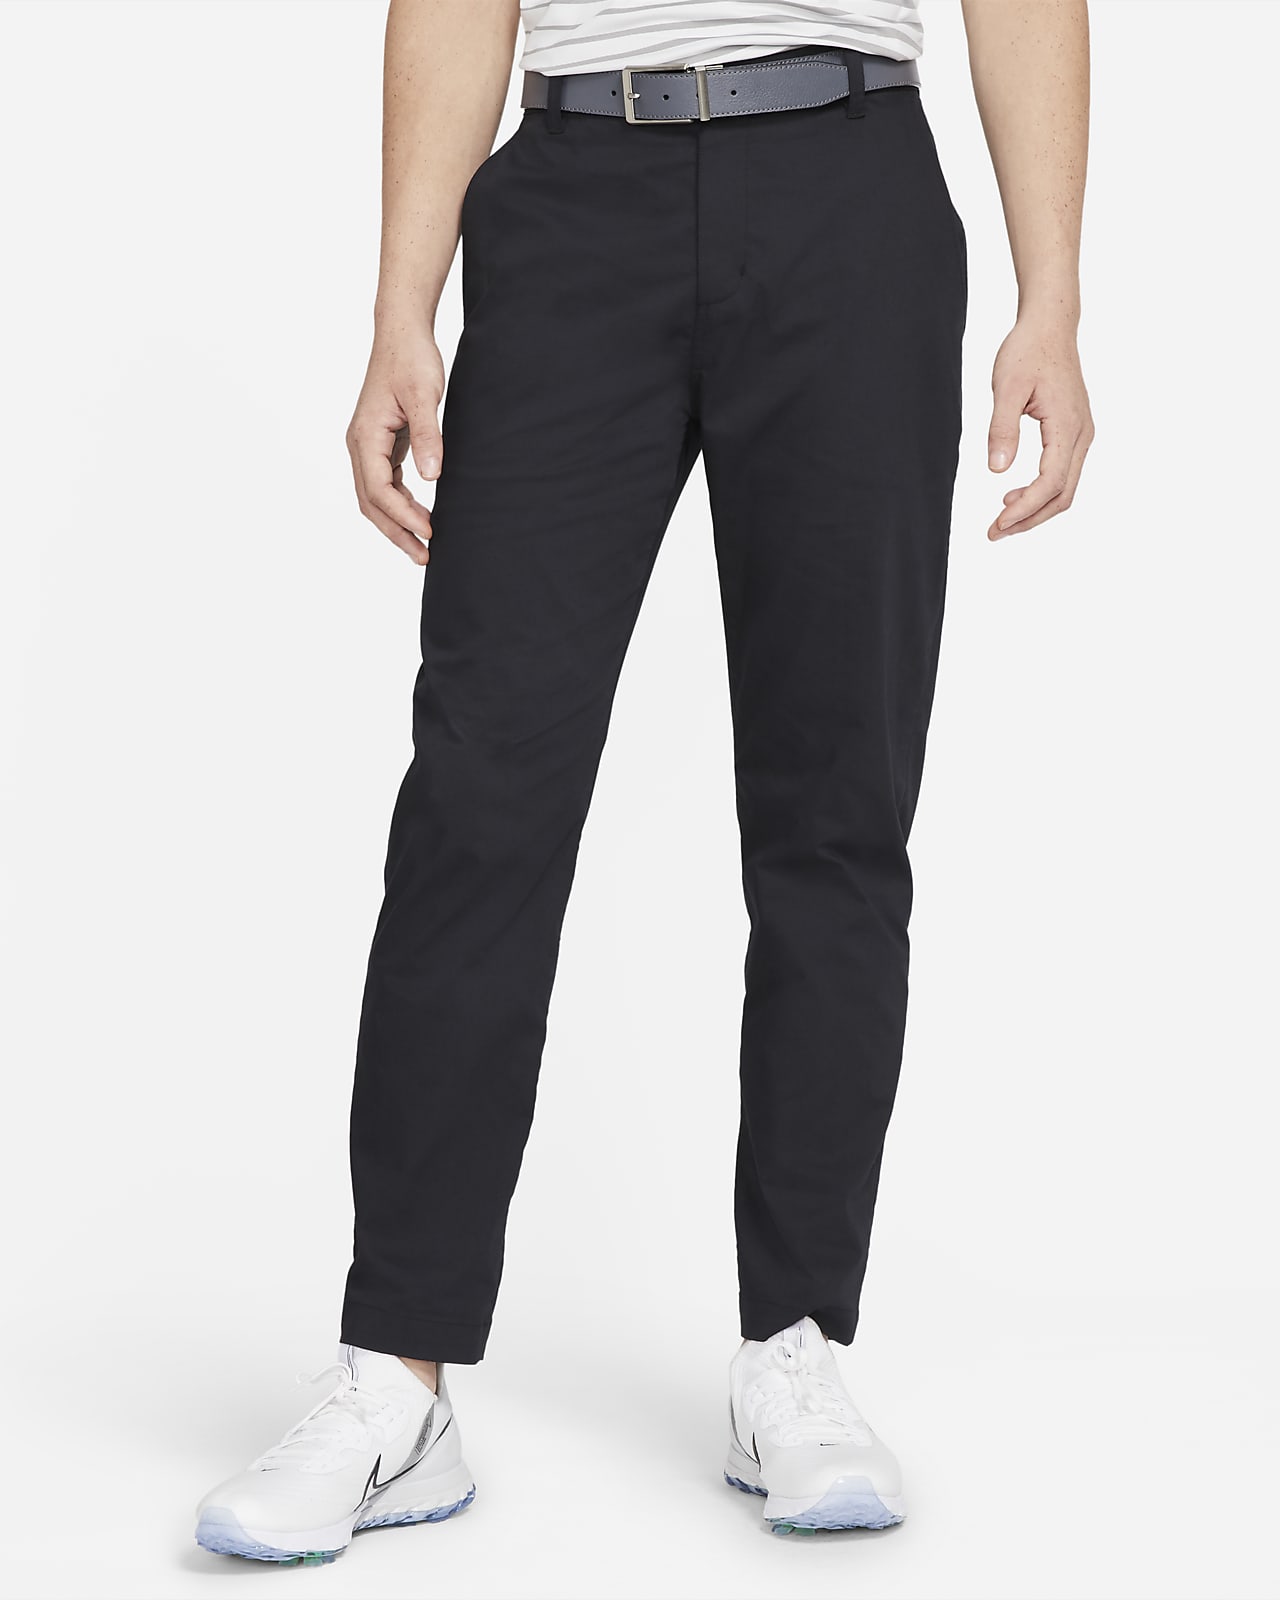 Nike Dri-FIT UV Men's Standard Fit Golf Chino Trousers